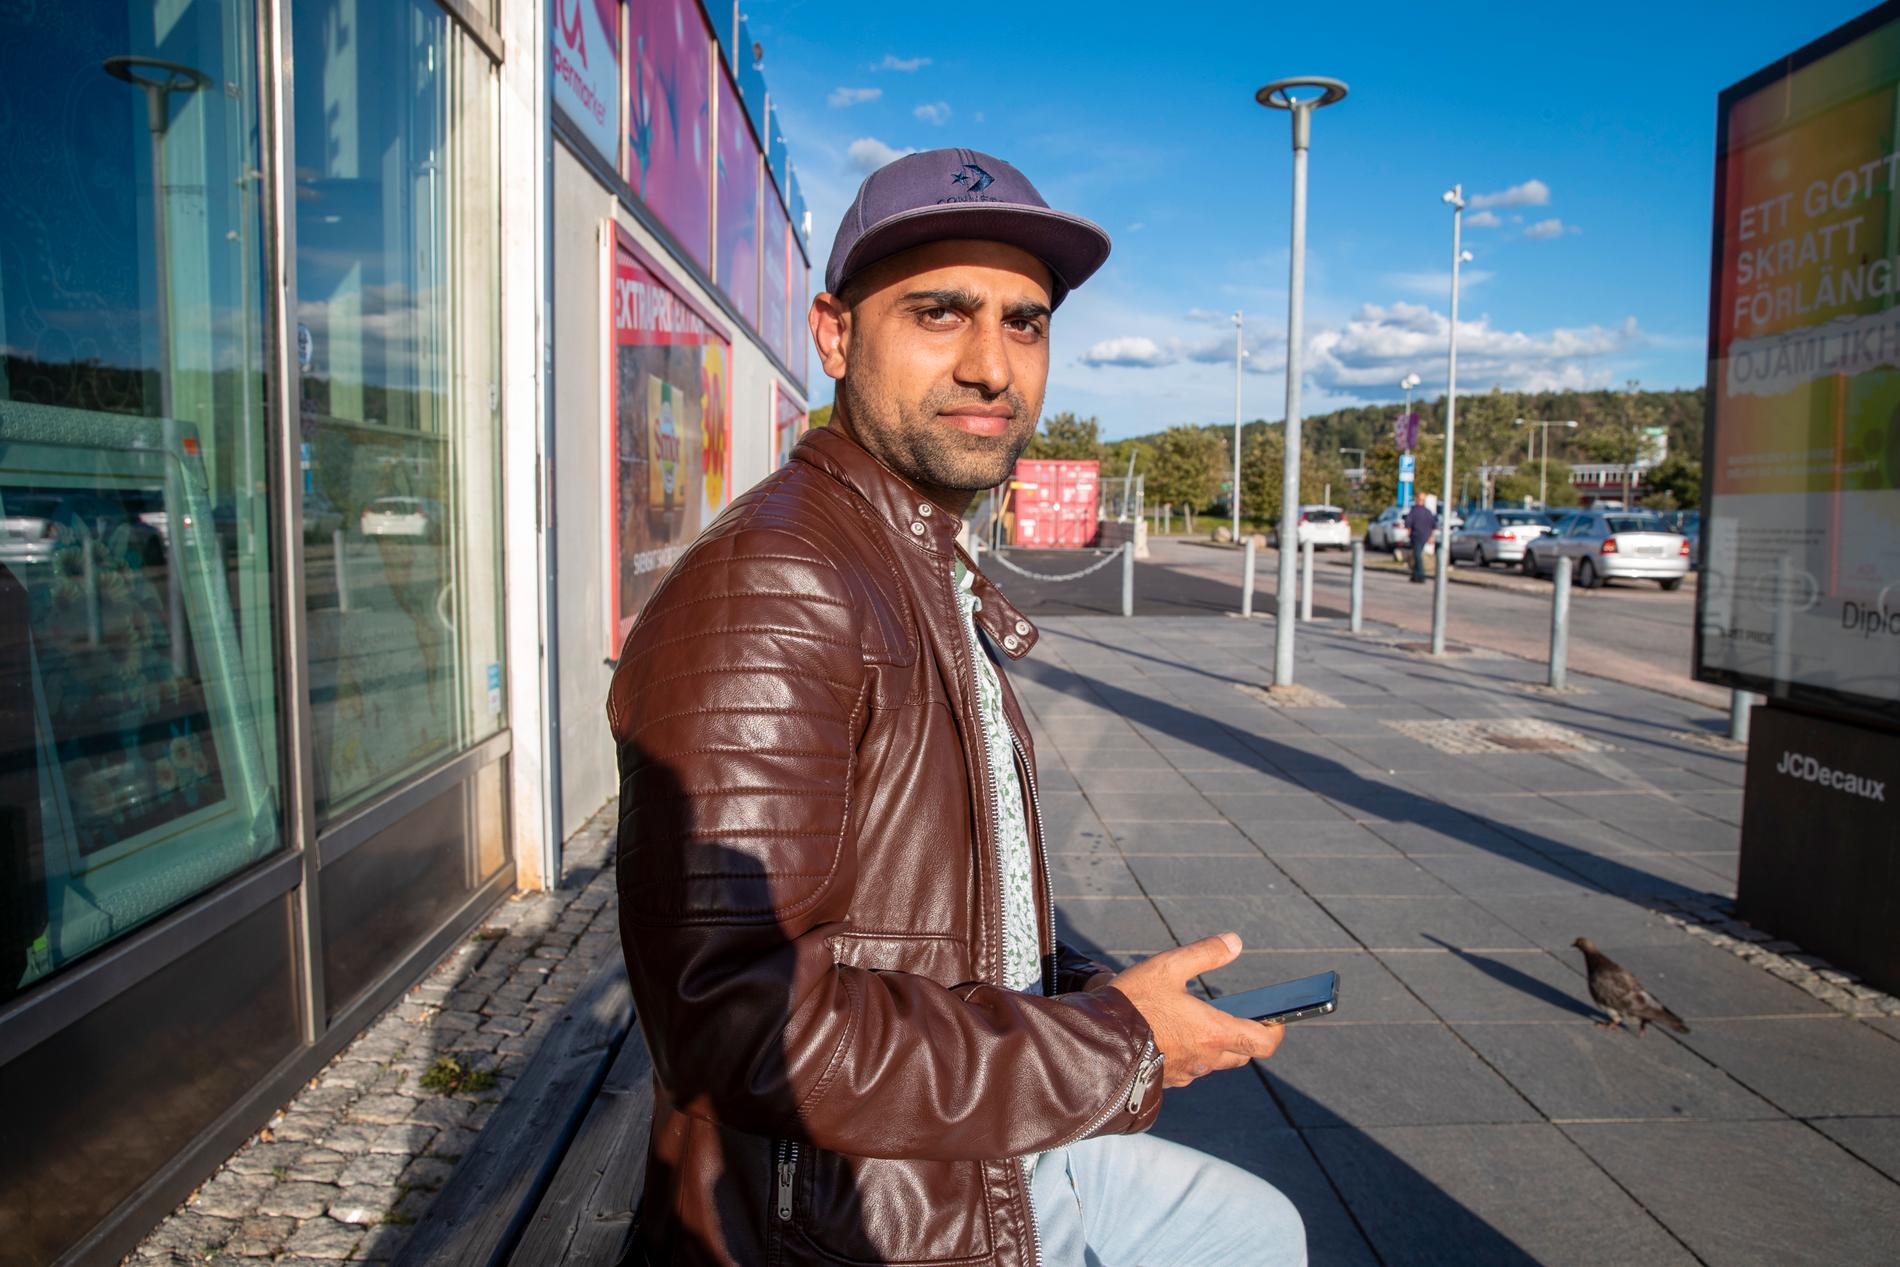 Ingenjören Salman bor i Hjällbo, Göteborg. Han tycker att kommunen måste satsa på skolan i området. ”Det är väldigt viktigt för att förebygga kriminalitet”, säger han.